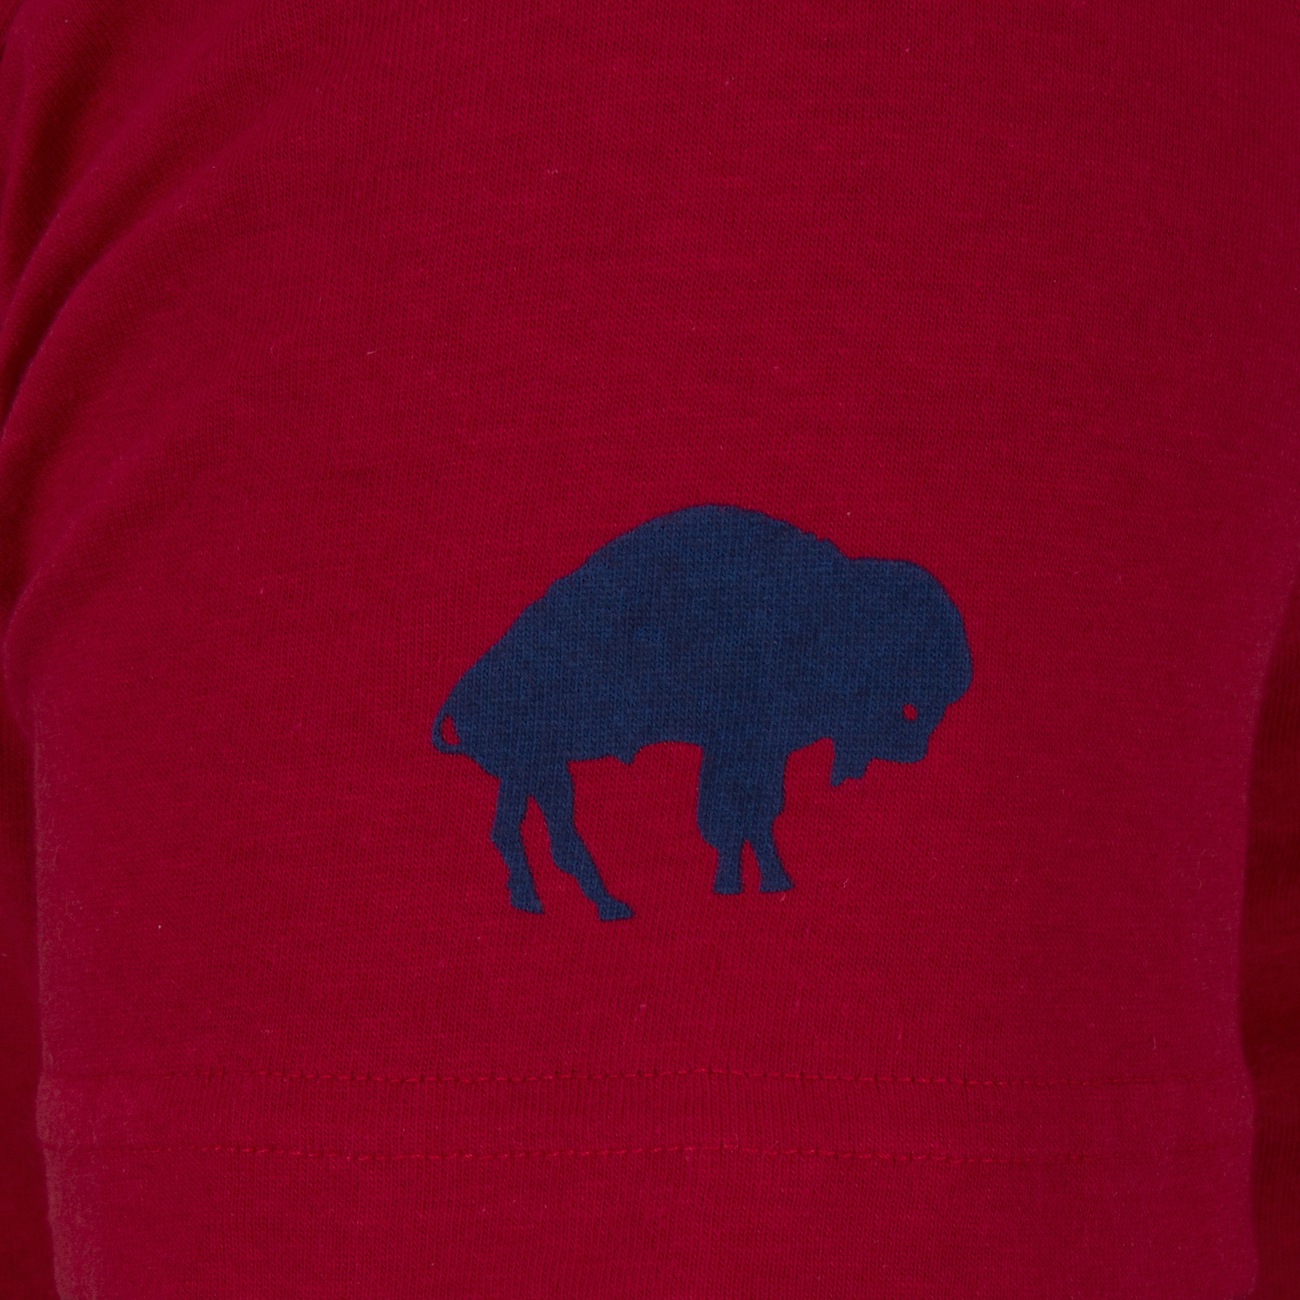 Camiseta Buffalo Bills NFL 1022 - Masculina - Centauro